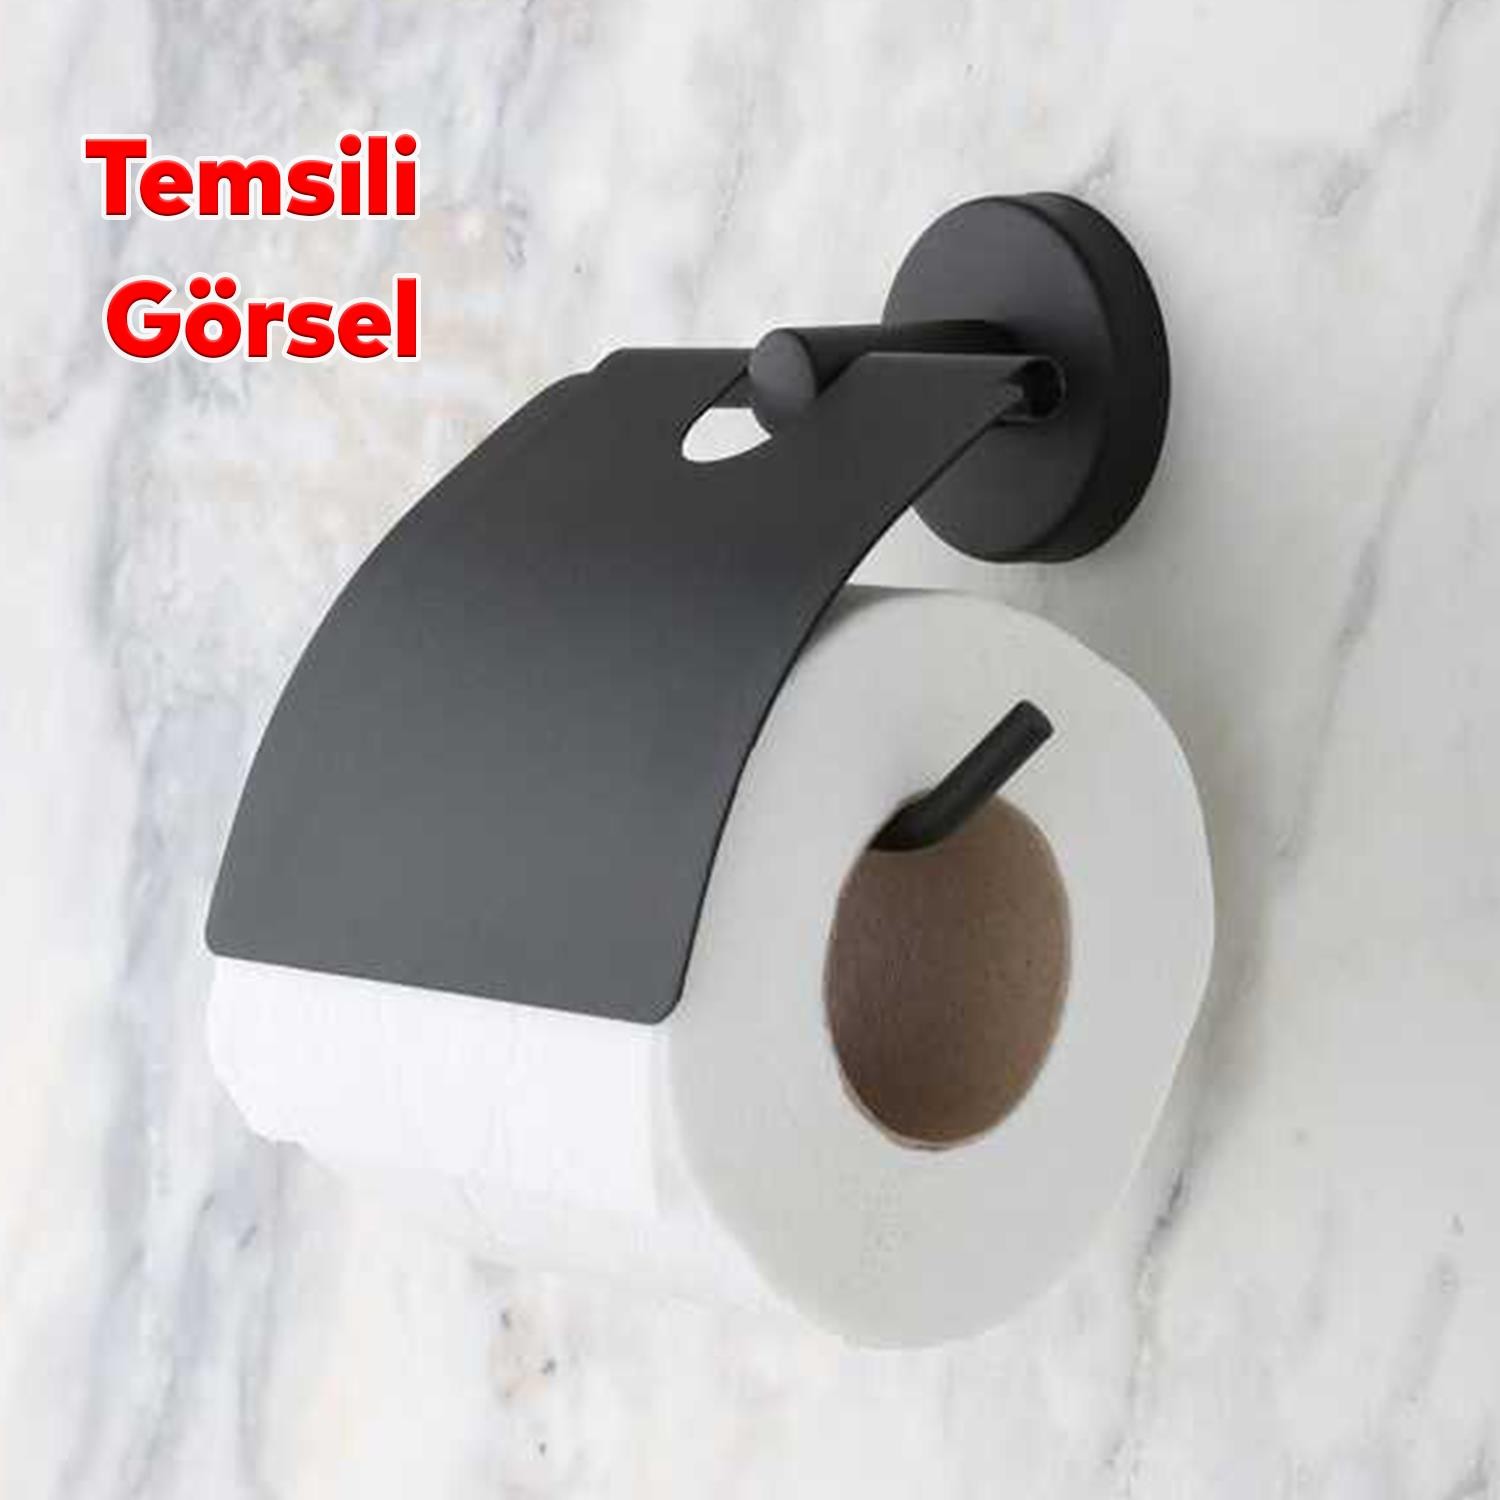 Yapışkanlı Tuvalet Kağıtlık Aparat Kapalı WC Kağıt Standı Paslanmaz Metal Sağlam Siyah Renk